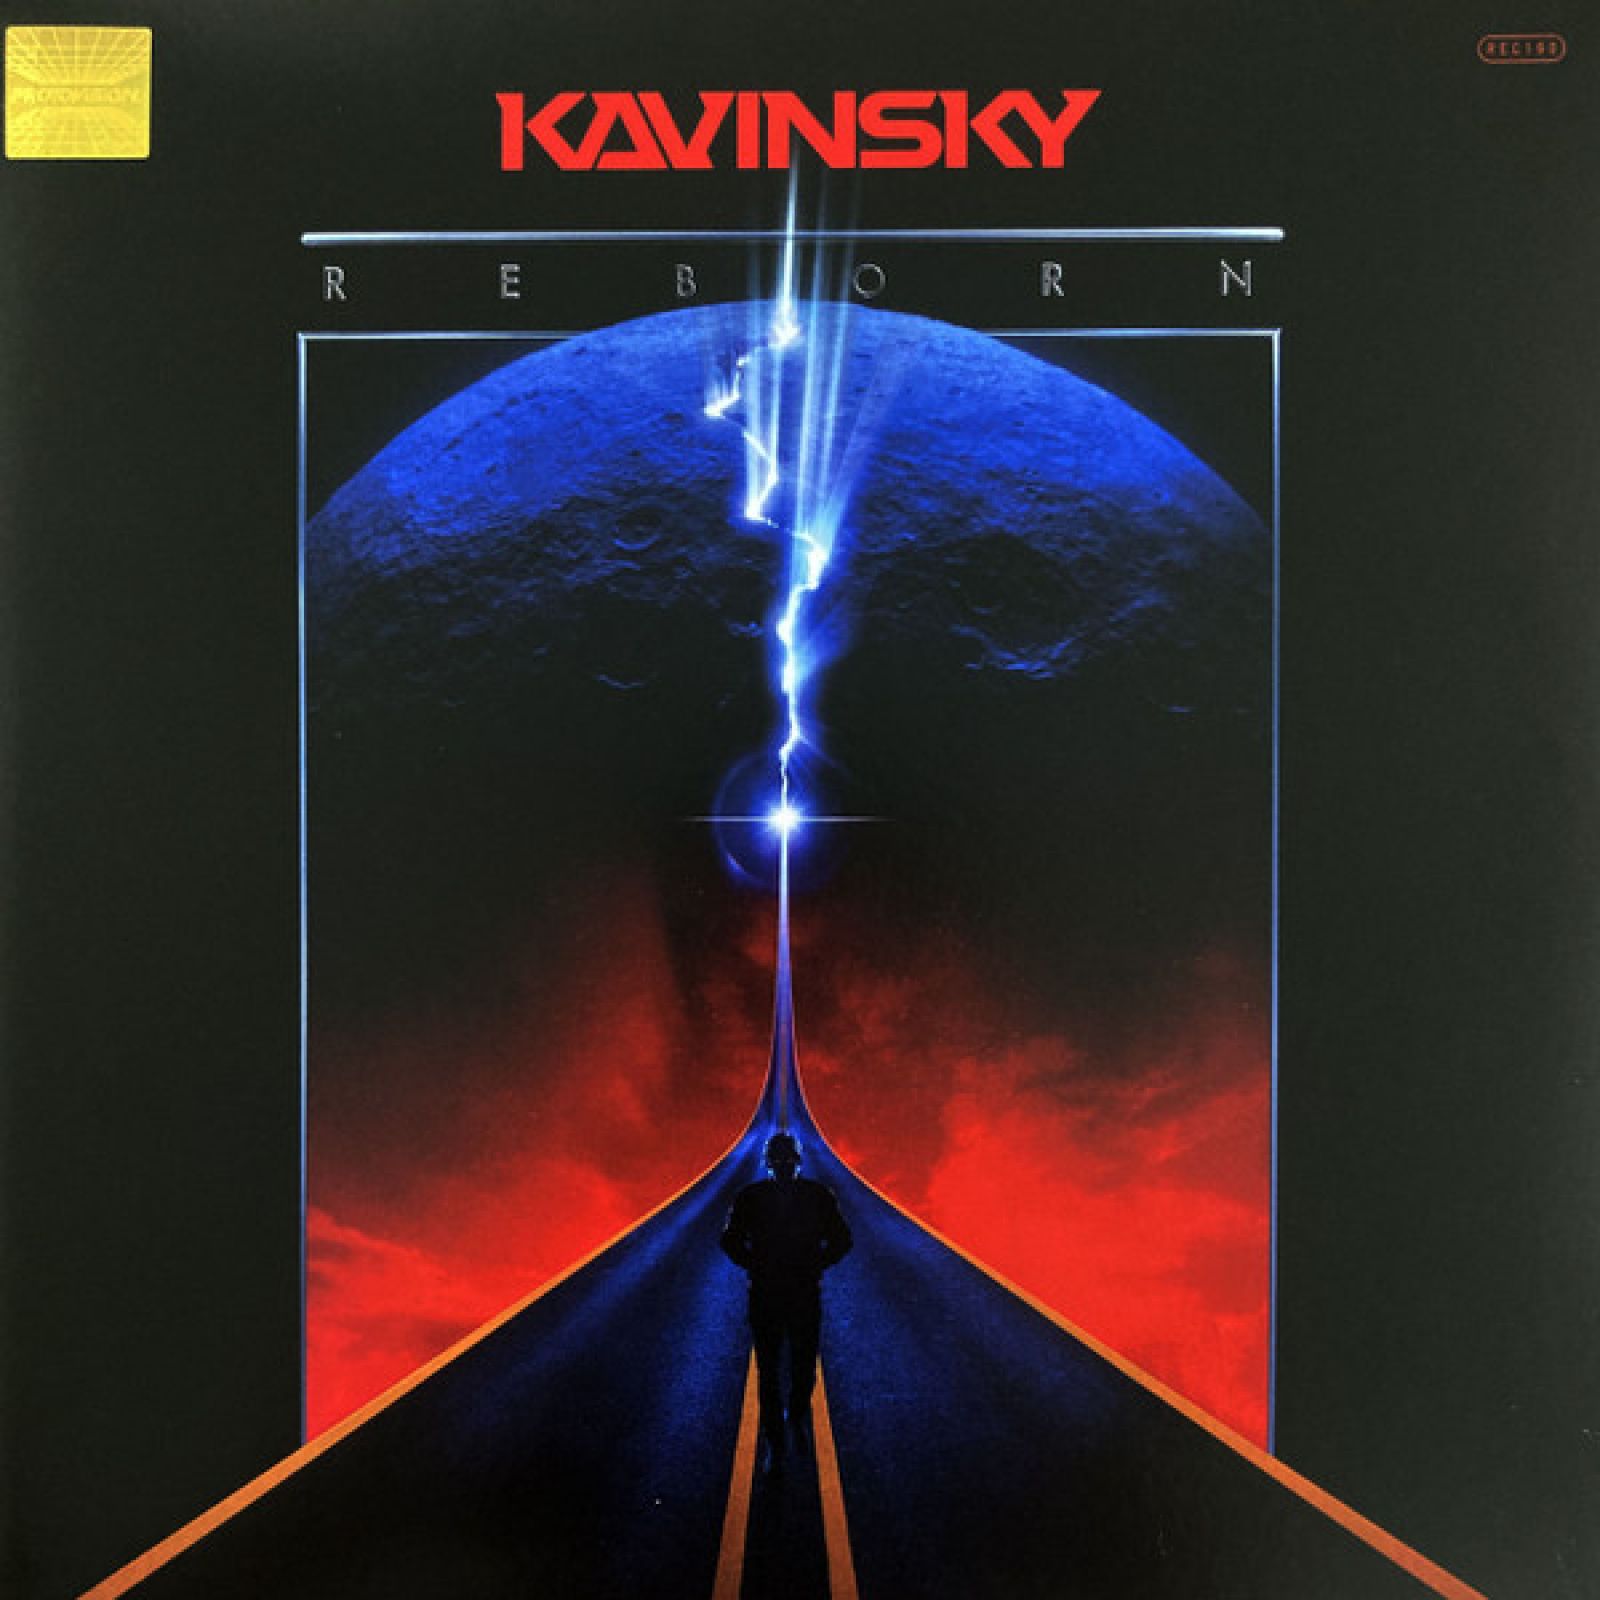 Виниловая пластинка Kavinsky, Reborn (5414165090243) виниловая пластинка kavinsky outrun